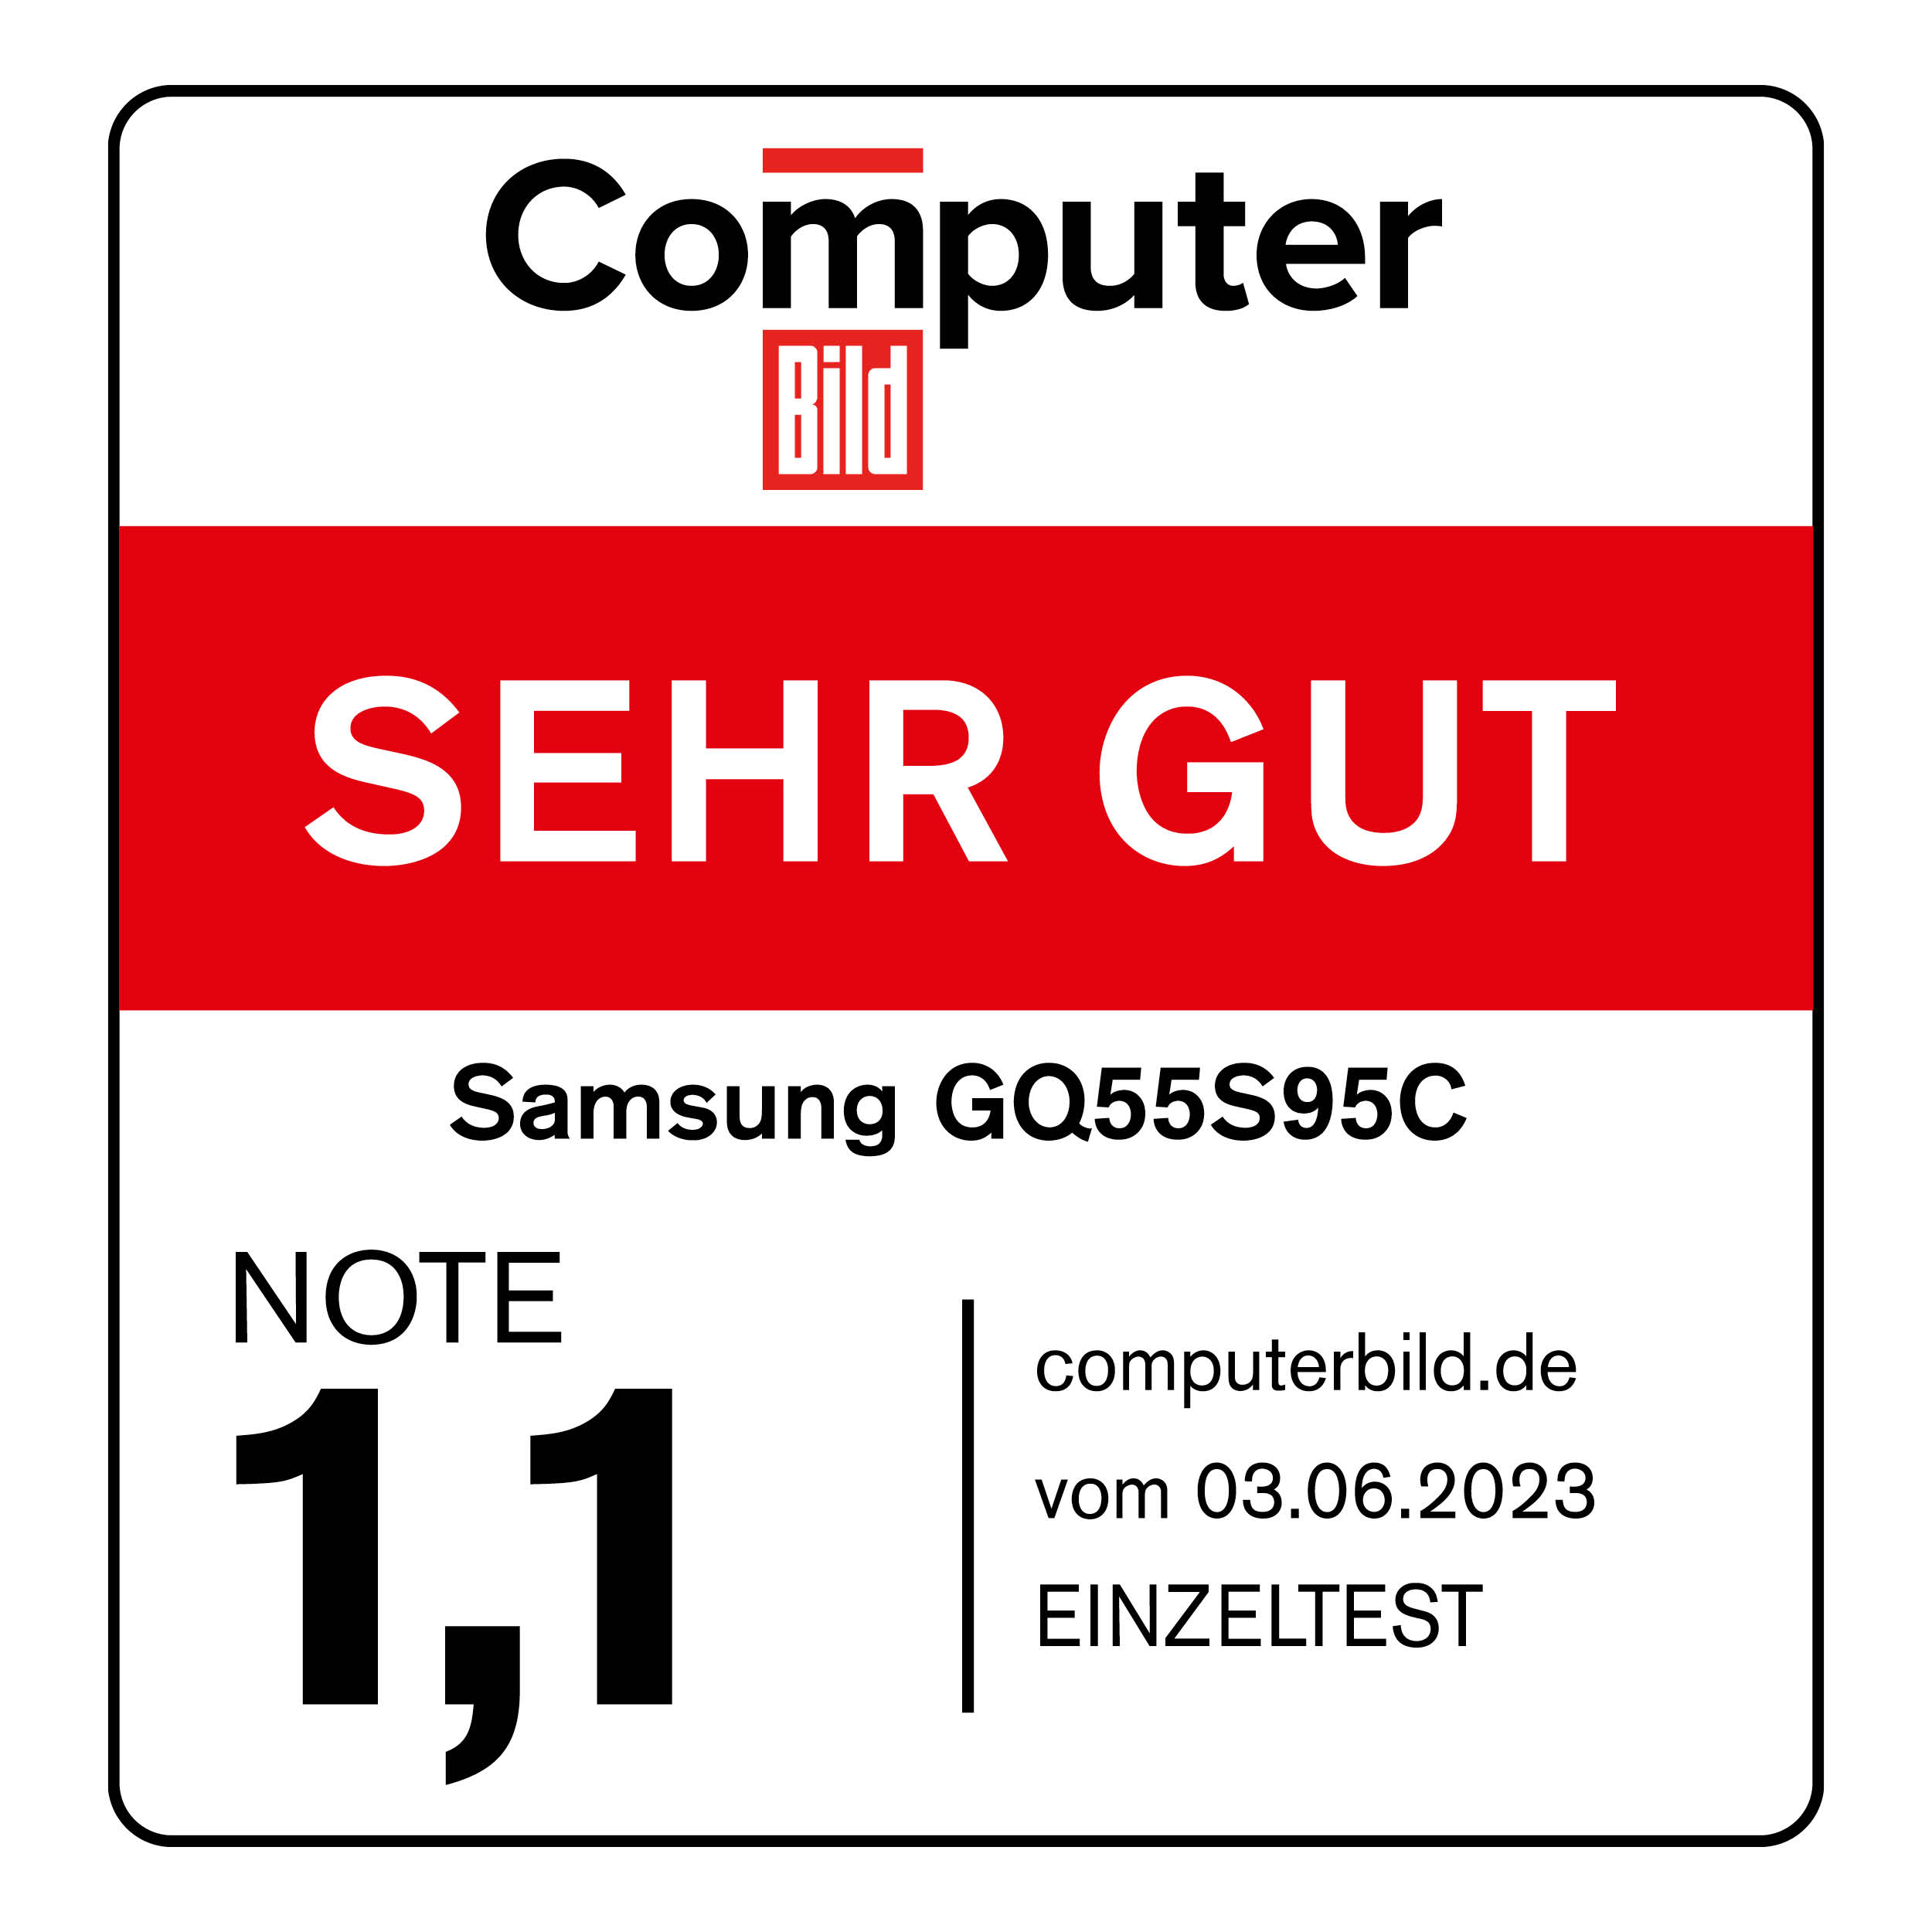 120853_Computer_Bild_sehr_gut_Samsung_GQ55S95C_06_2023_mitAngaben